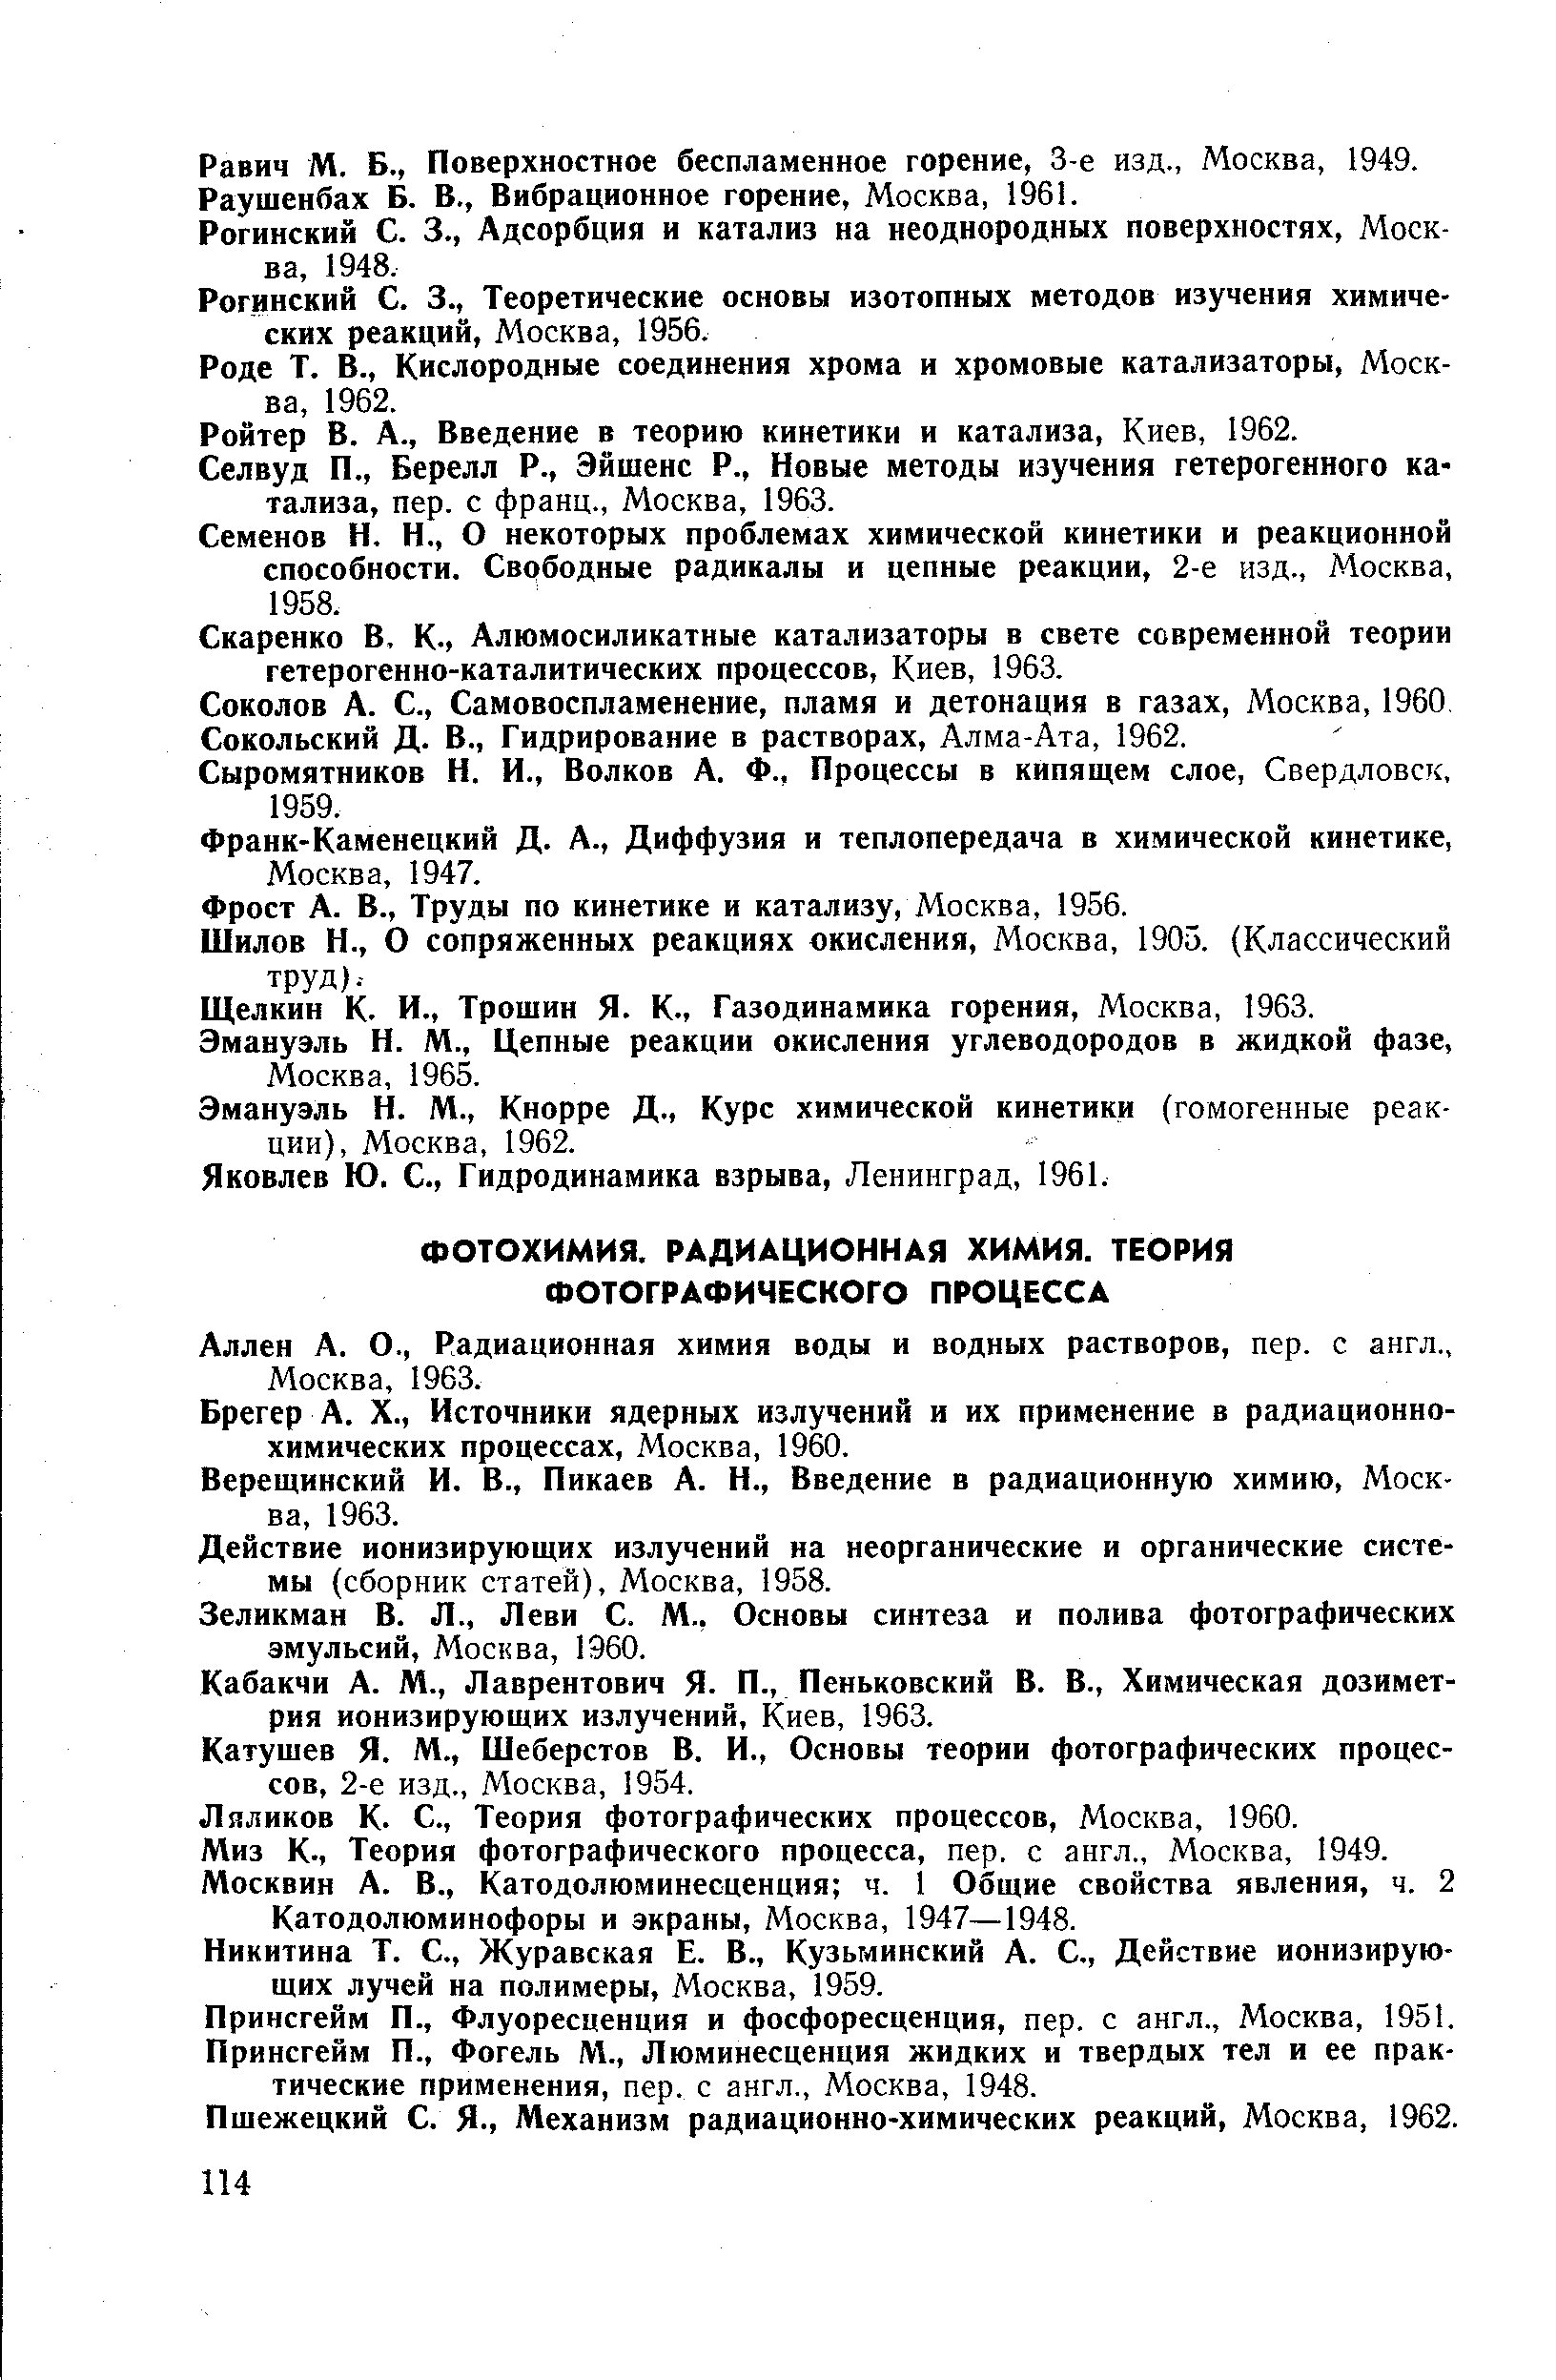 Аллен А. О., Радиационная химия воды и водных растворов, пер. с англ., Москва, 1963.